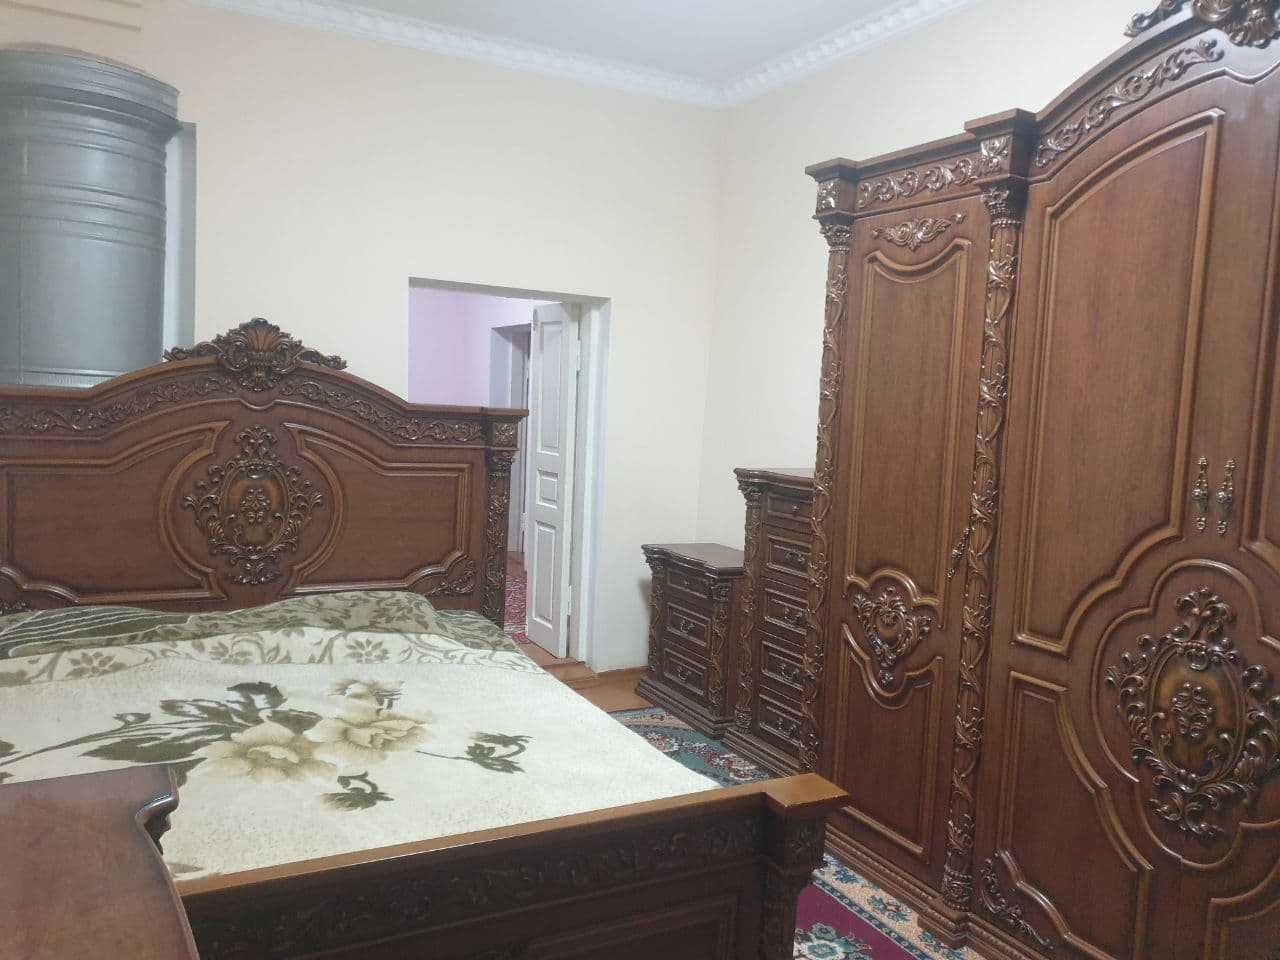 Продаётся дом 8 сотых по улице Гагарина (15 автопарк, Олтин Самарканд)